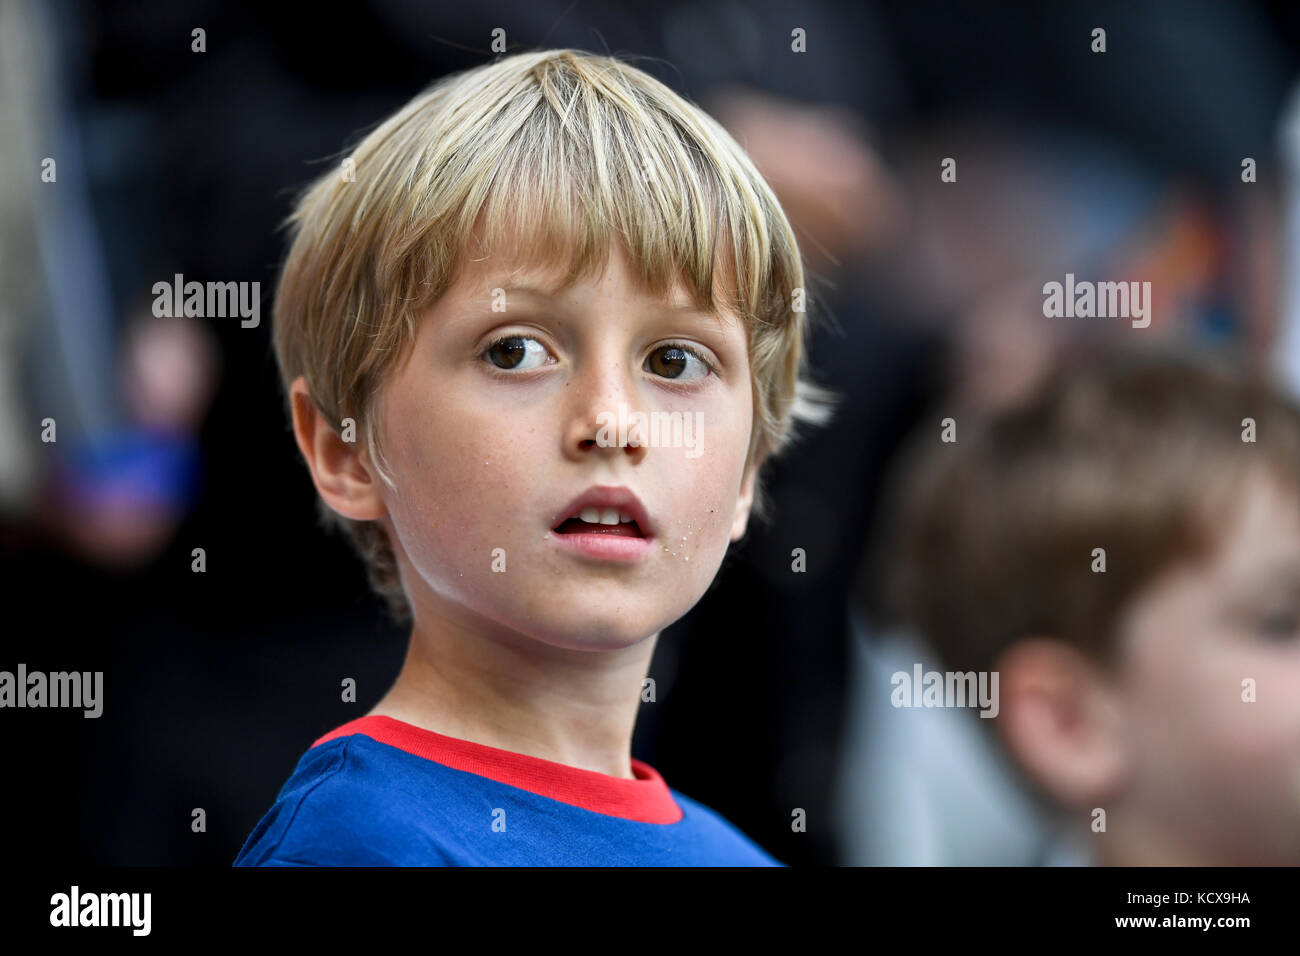 British Boy mirando a un partido de fútbol Foto de stock